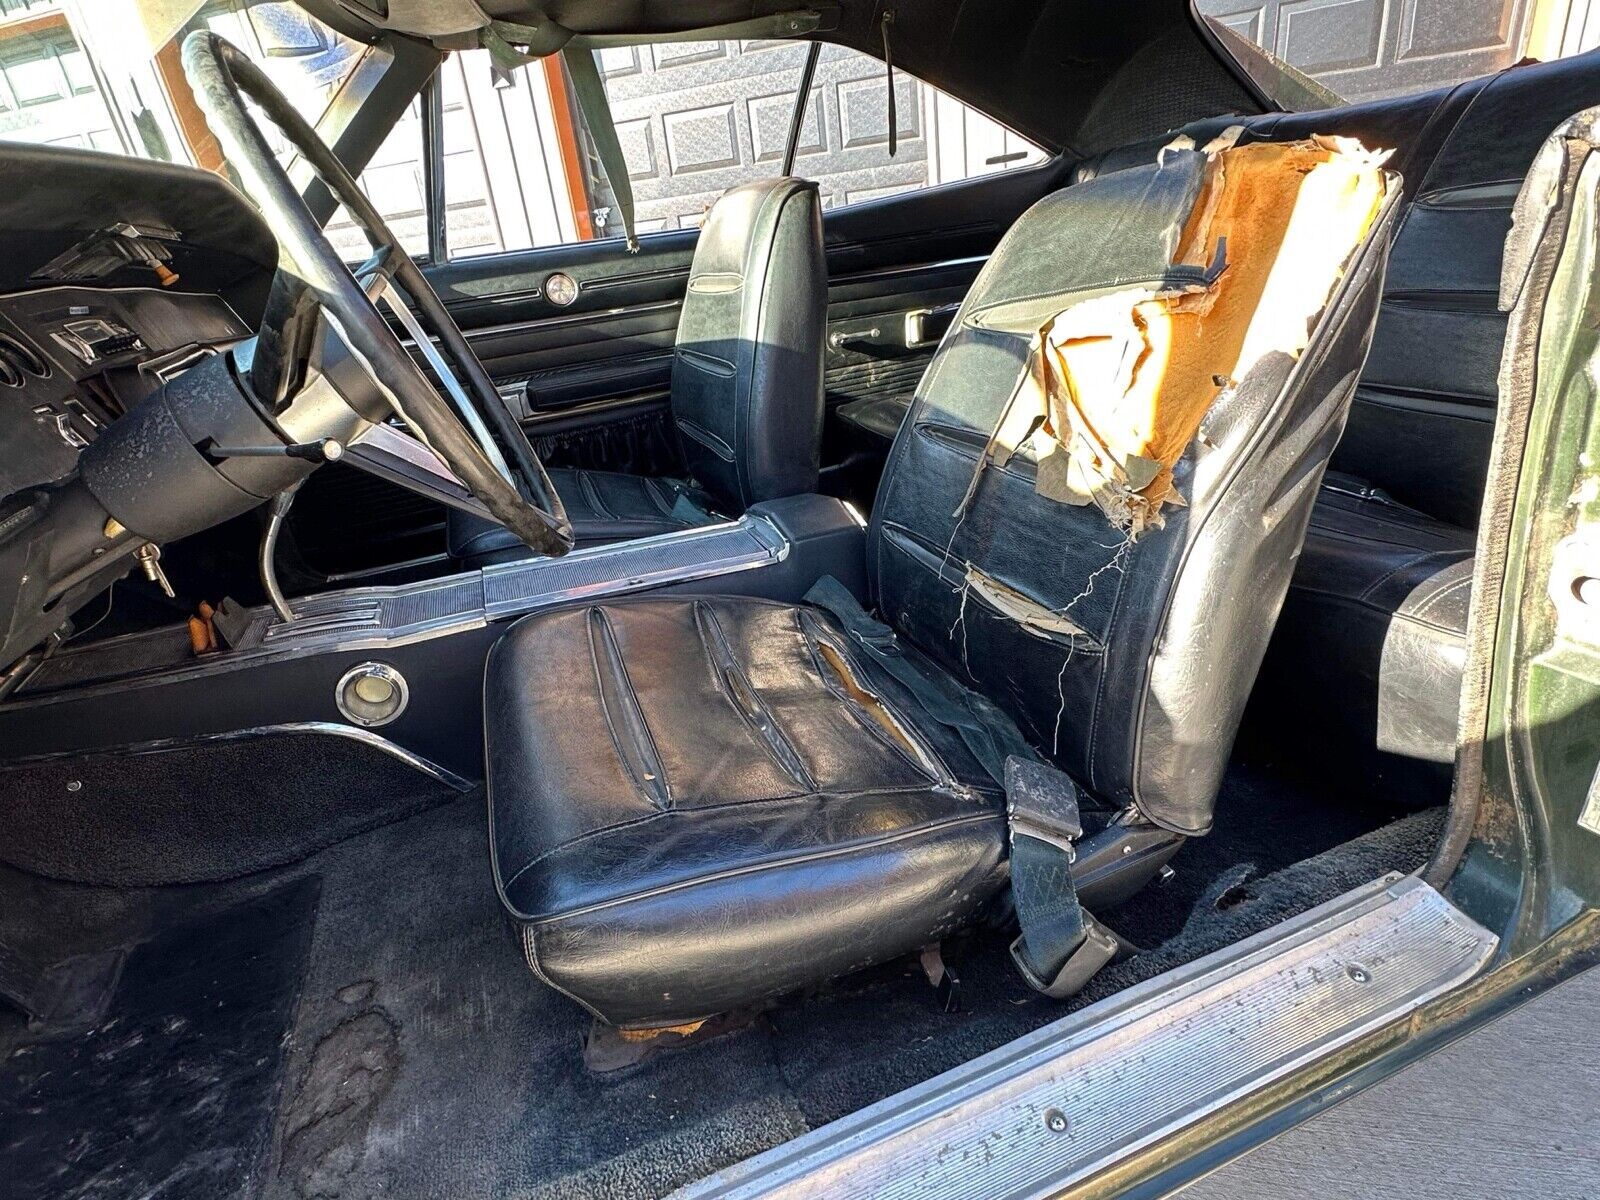 Original Survivor: 1970s Dodge Charger Found in Storage